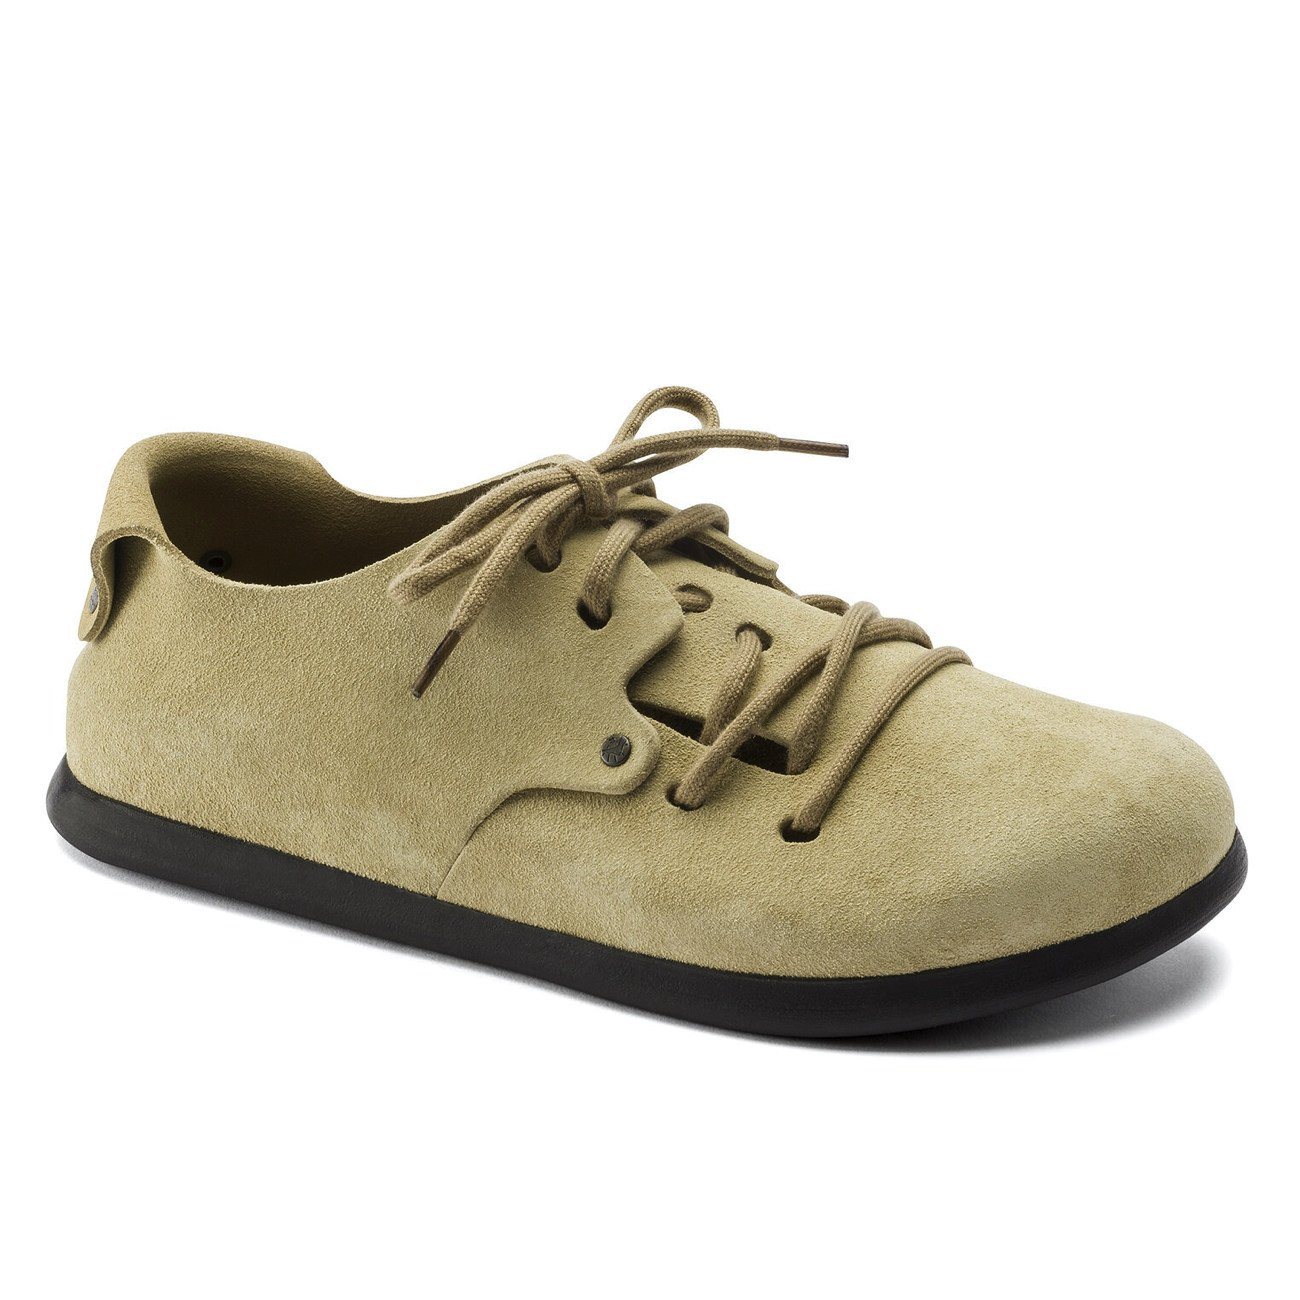 Birkenstock Shoes, Montana, Suede, Narrow Fit, Sand Shoes Birkenstock Shoes Sand 35 